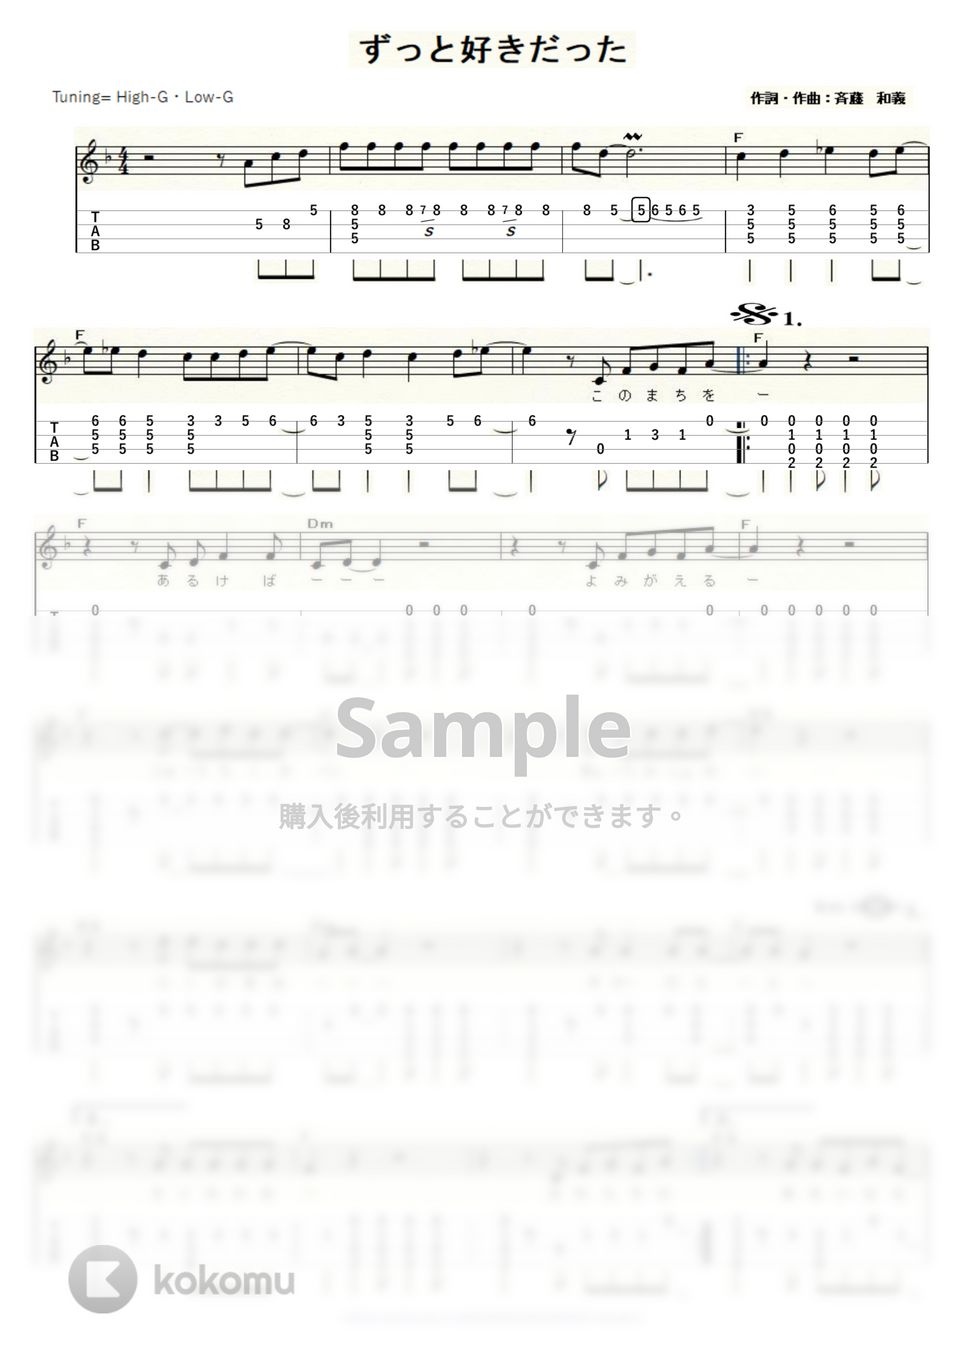 斉藤和義 - ずっと好きだった (ｳｸﾚﾚｿﾛ/High-G・Low-G/中級) by ukulelepapa